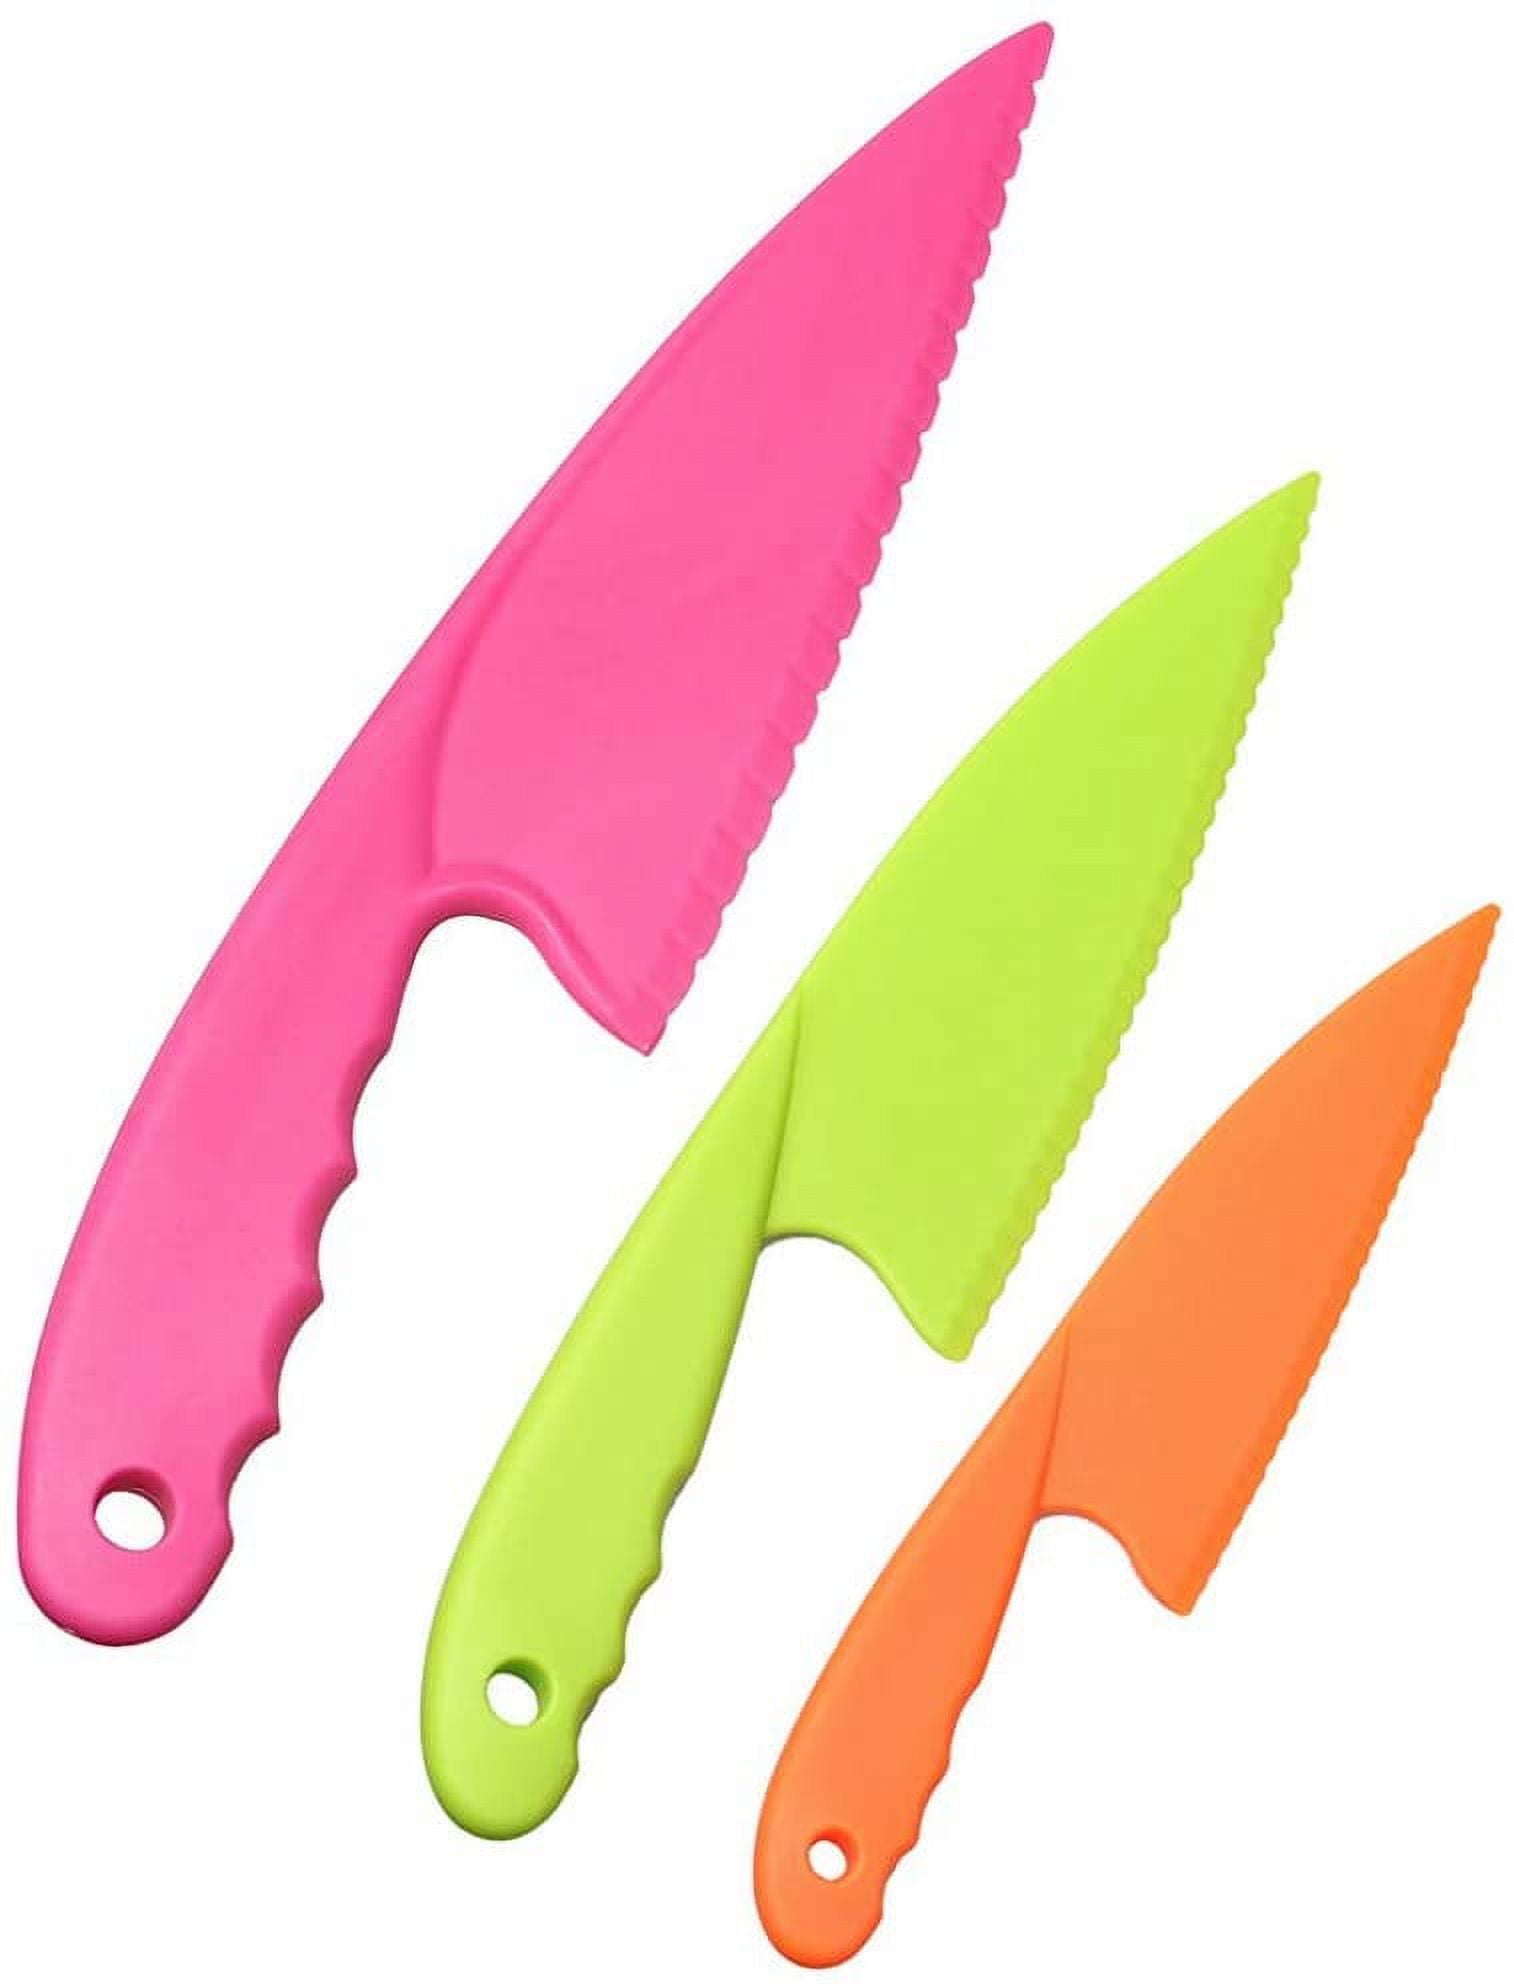 12Pcs Fruit Knife set